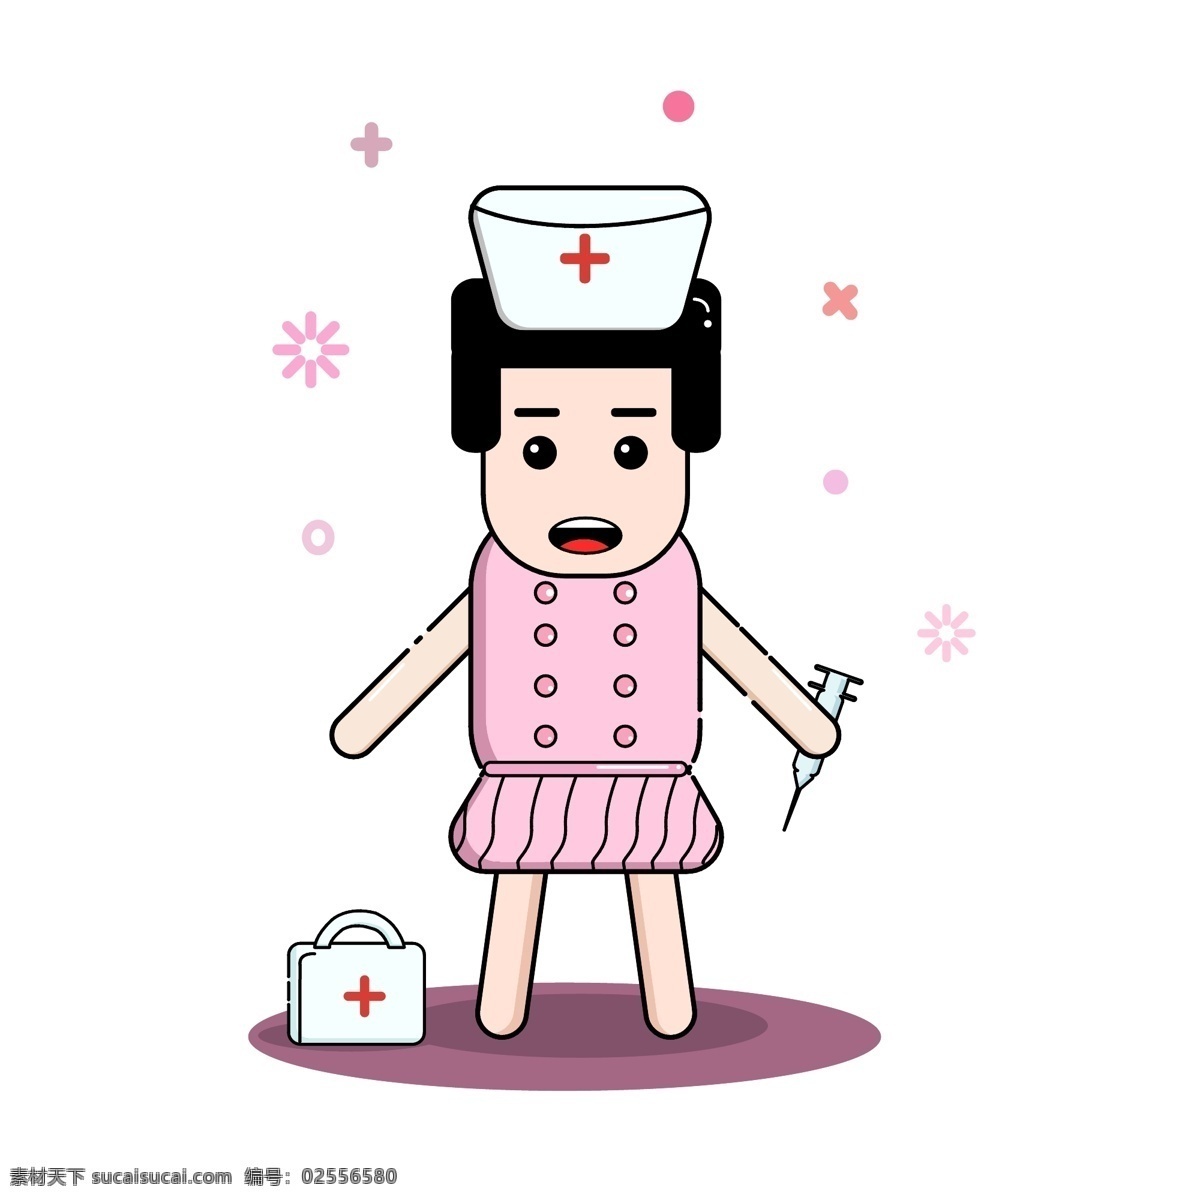 mbe 人物 护士 药箱 可爱 卡通 商用 元素 可商用